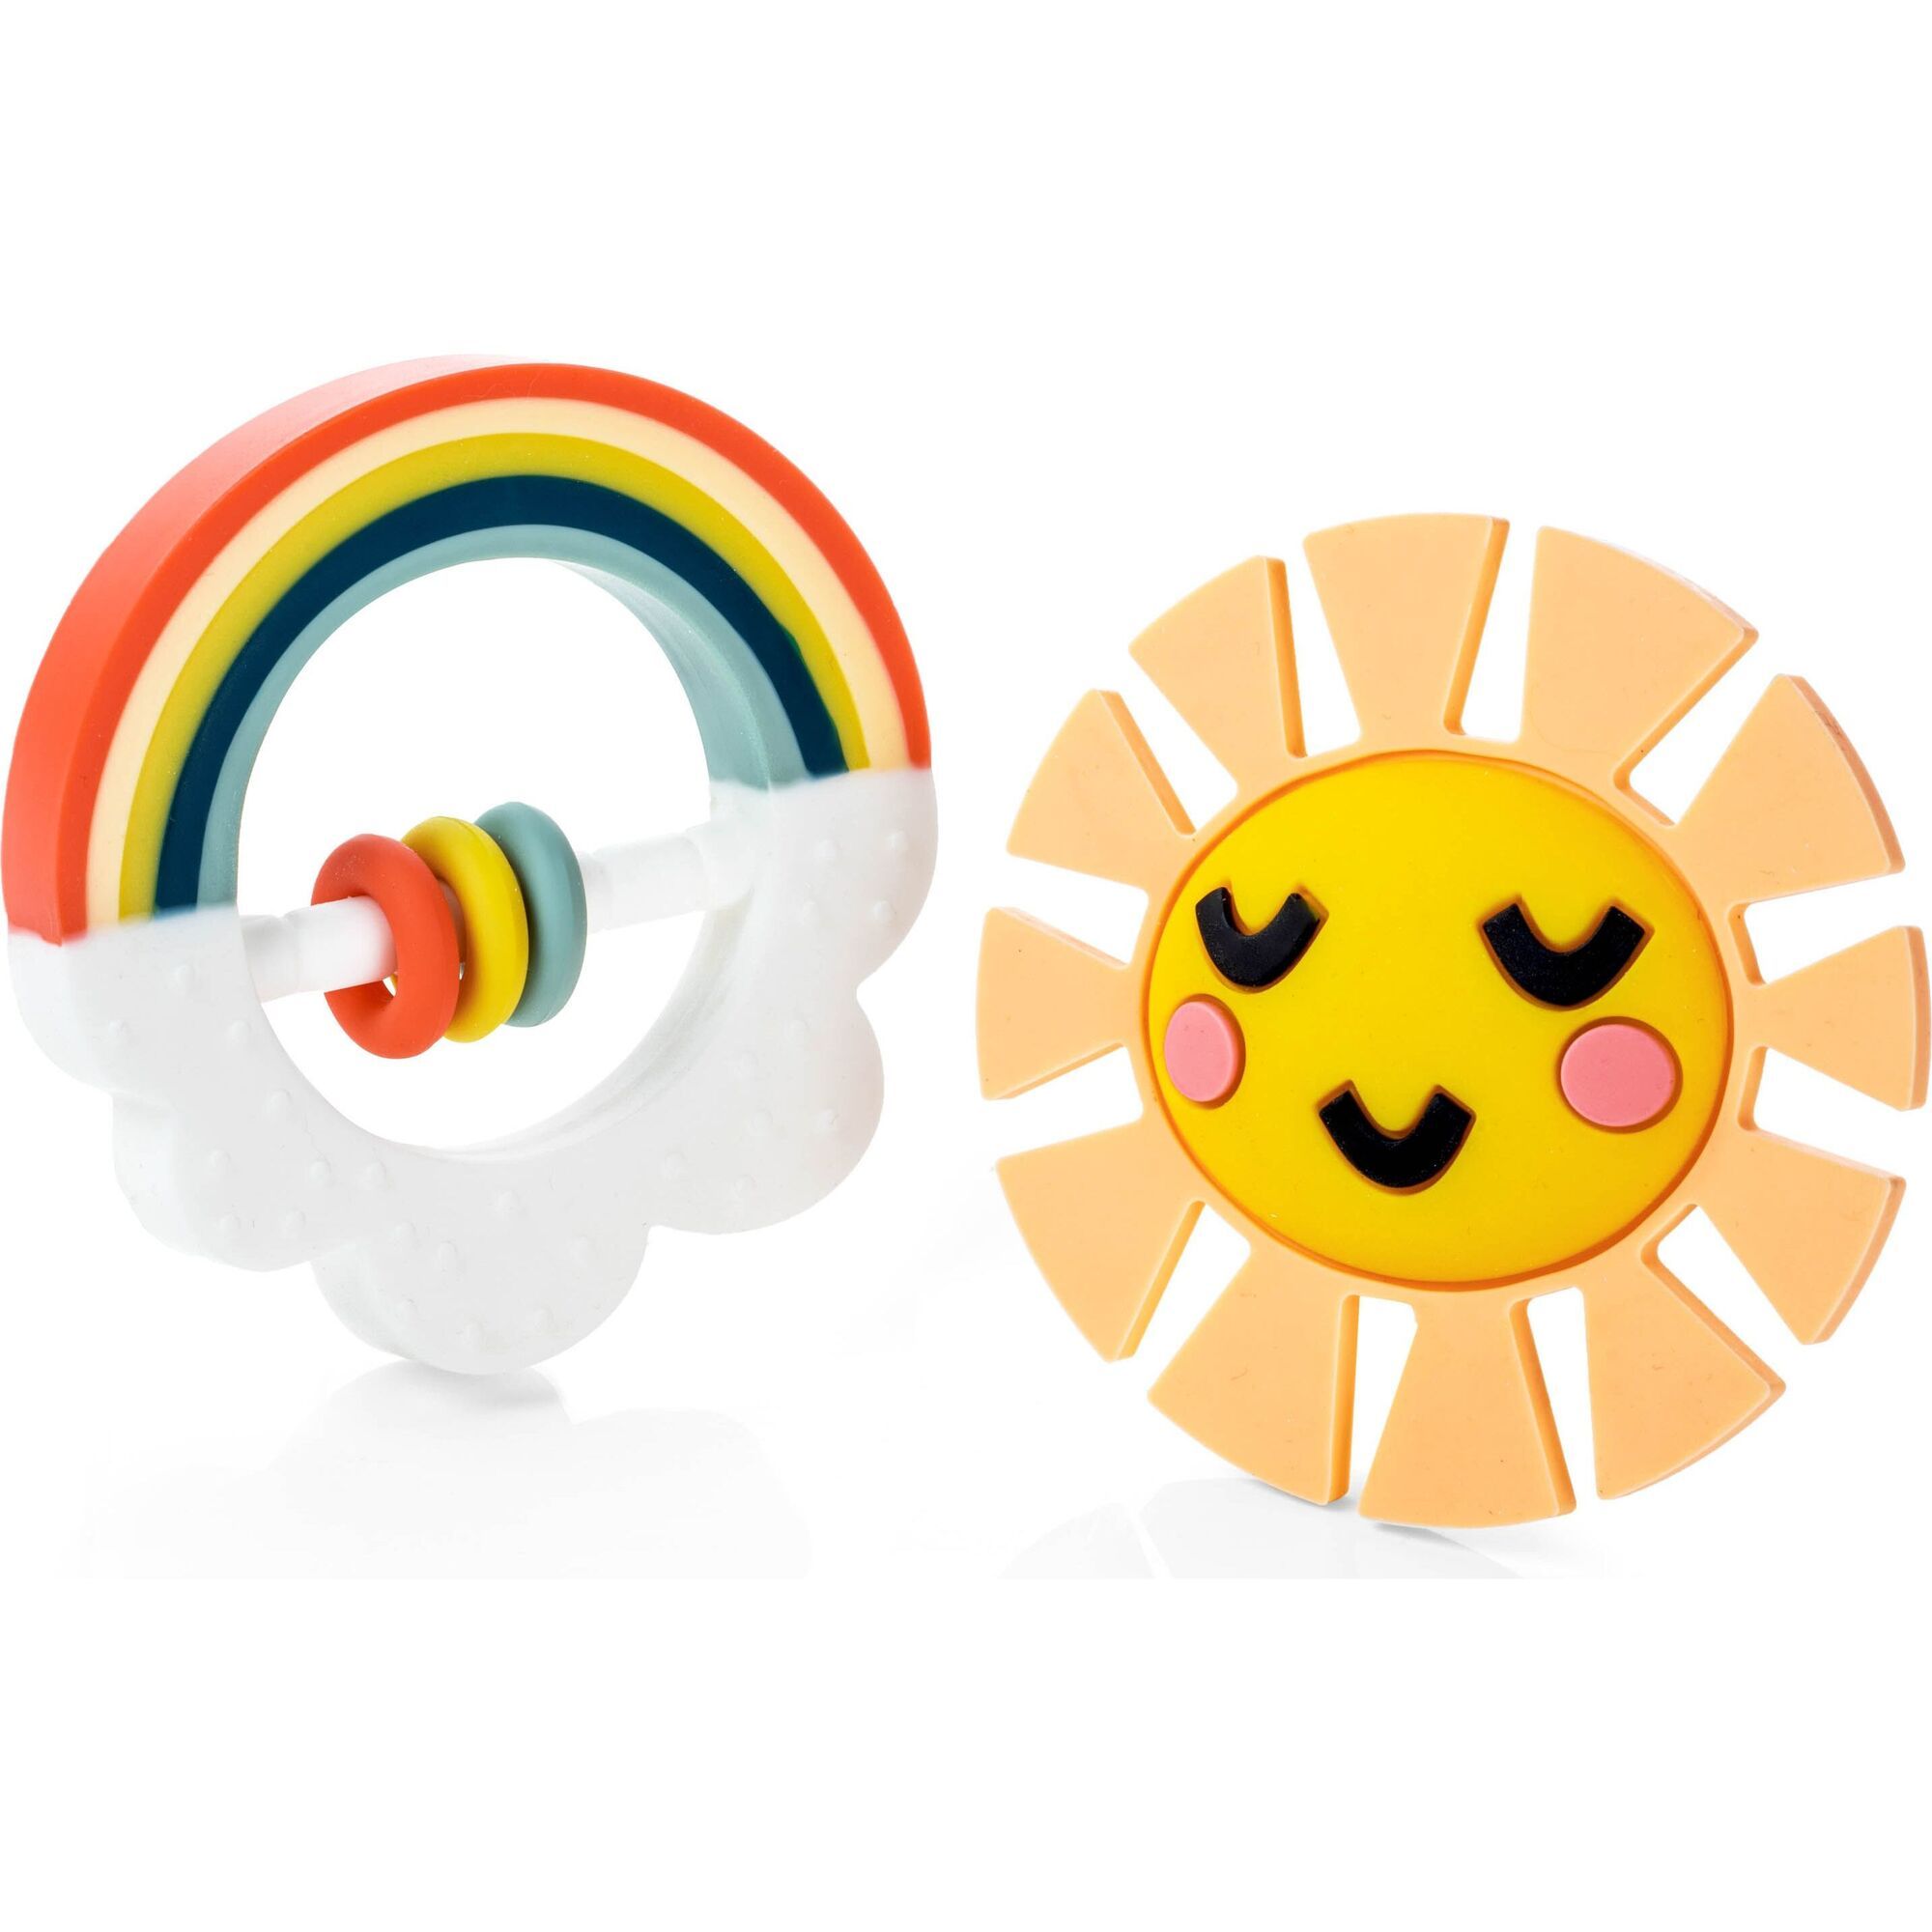 Little Rainbow Teether Toy | Maisonette